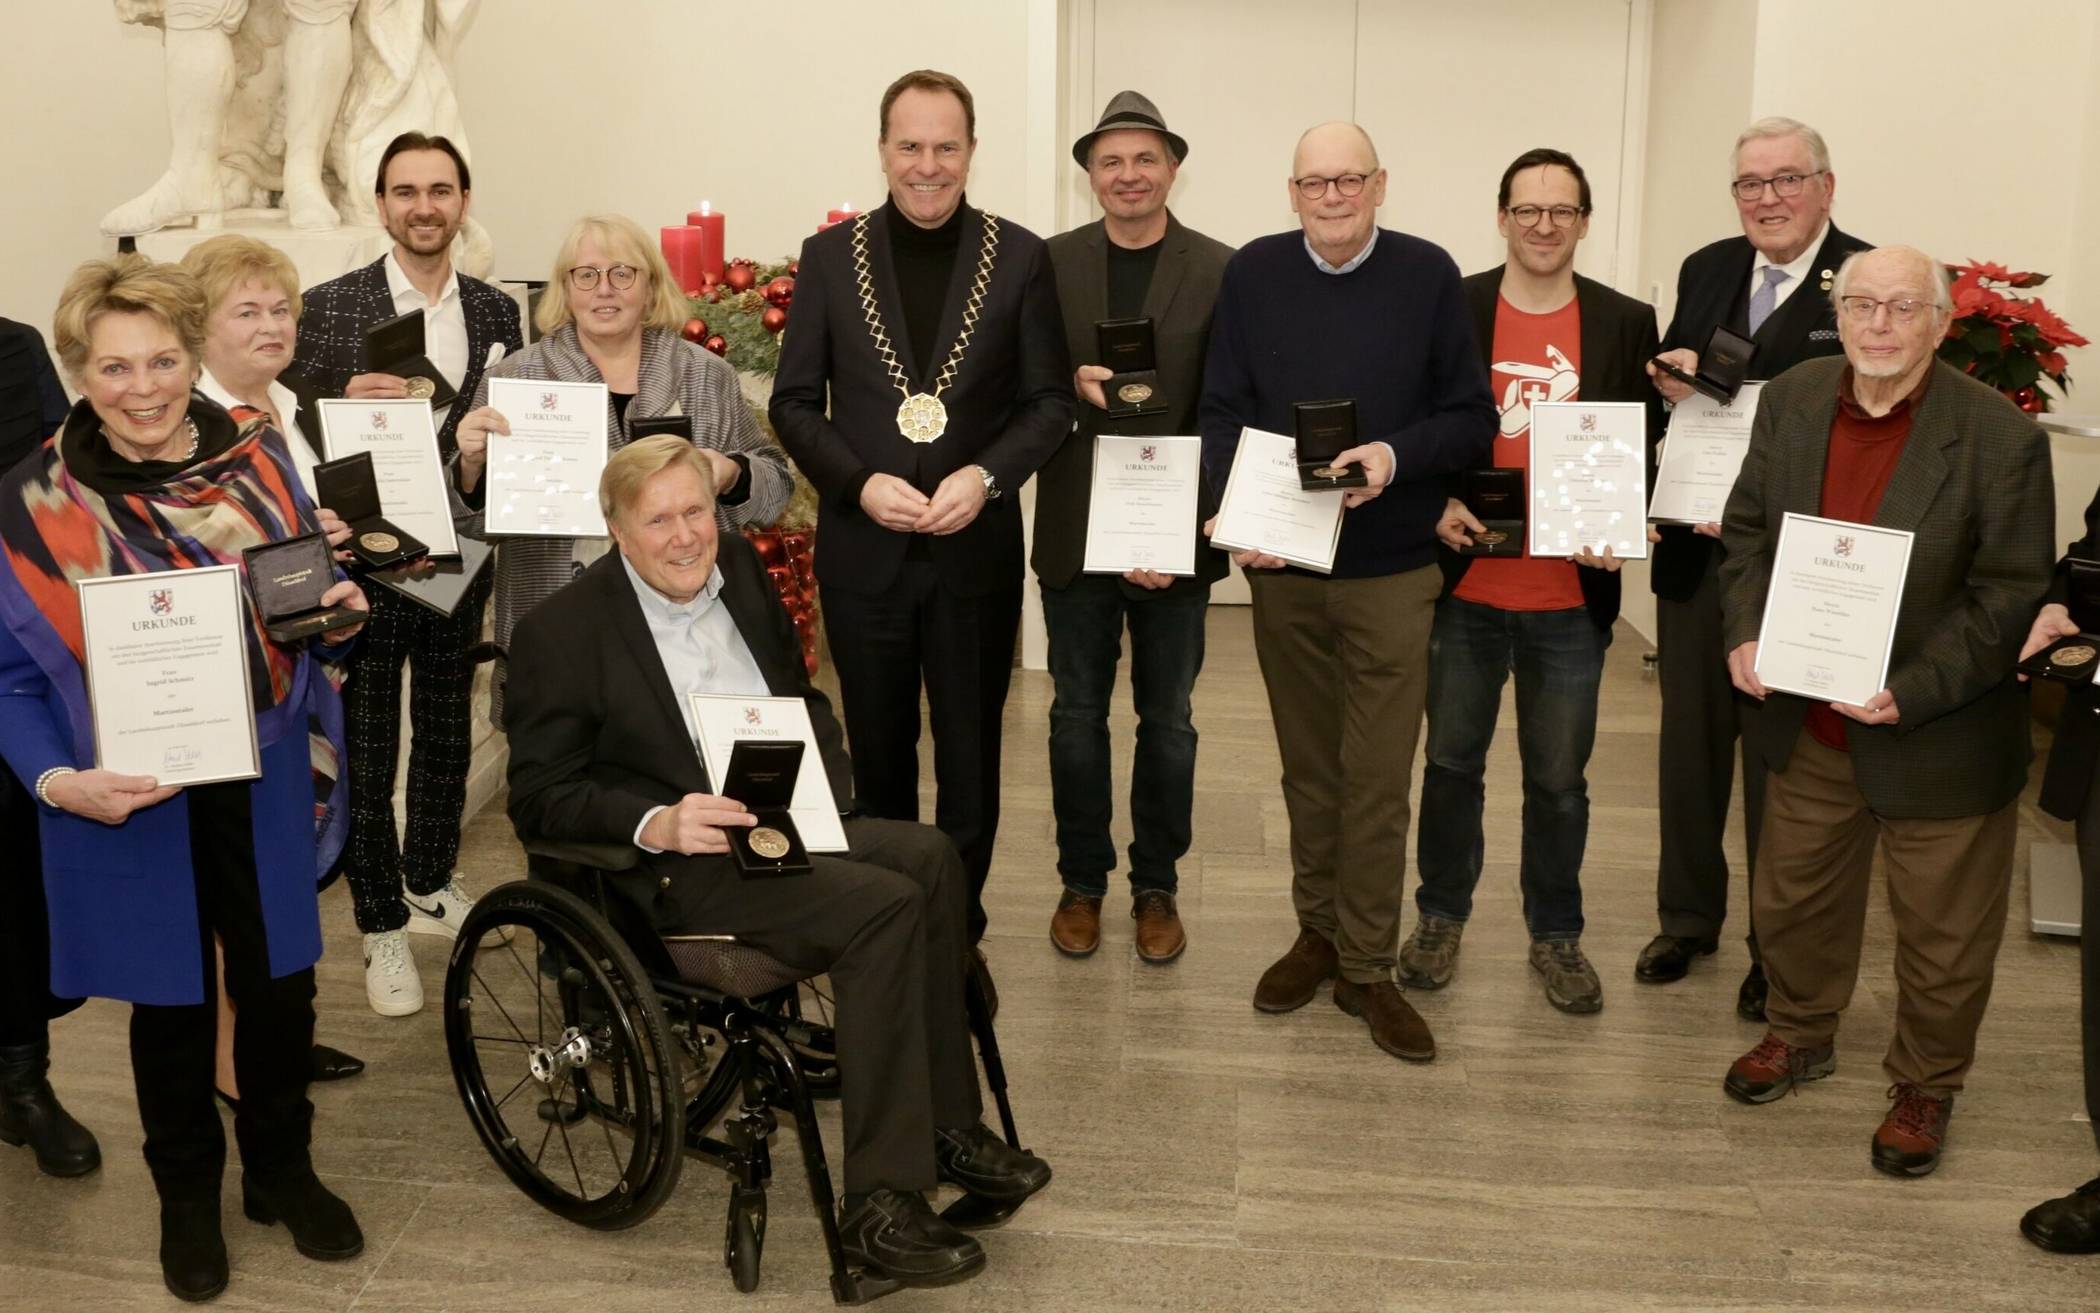 Oberbürgermeister Dr. Stephan Keller (M. mit Amtskette) mit den Preisträgerinnen und Preisträgern des Martinstalers.